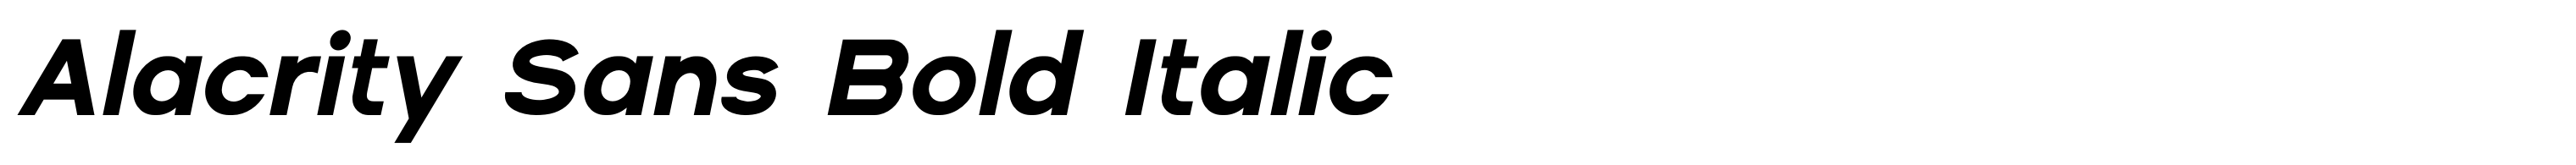 Alacrity Sans Bold Italic